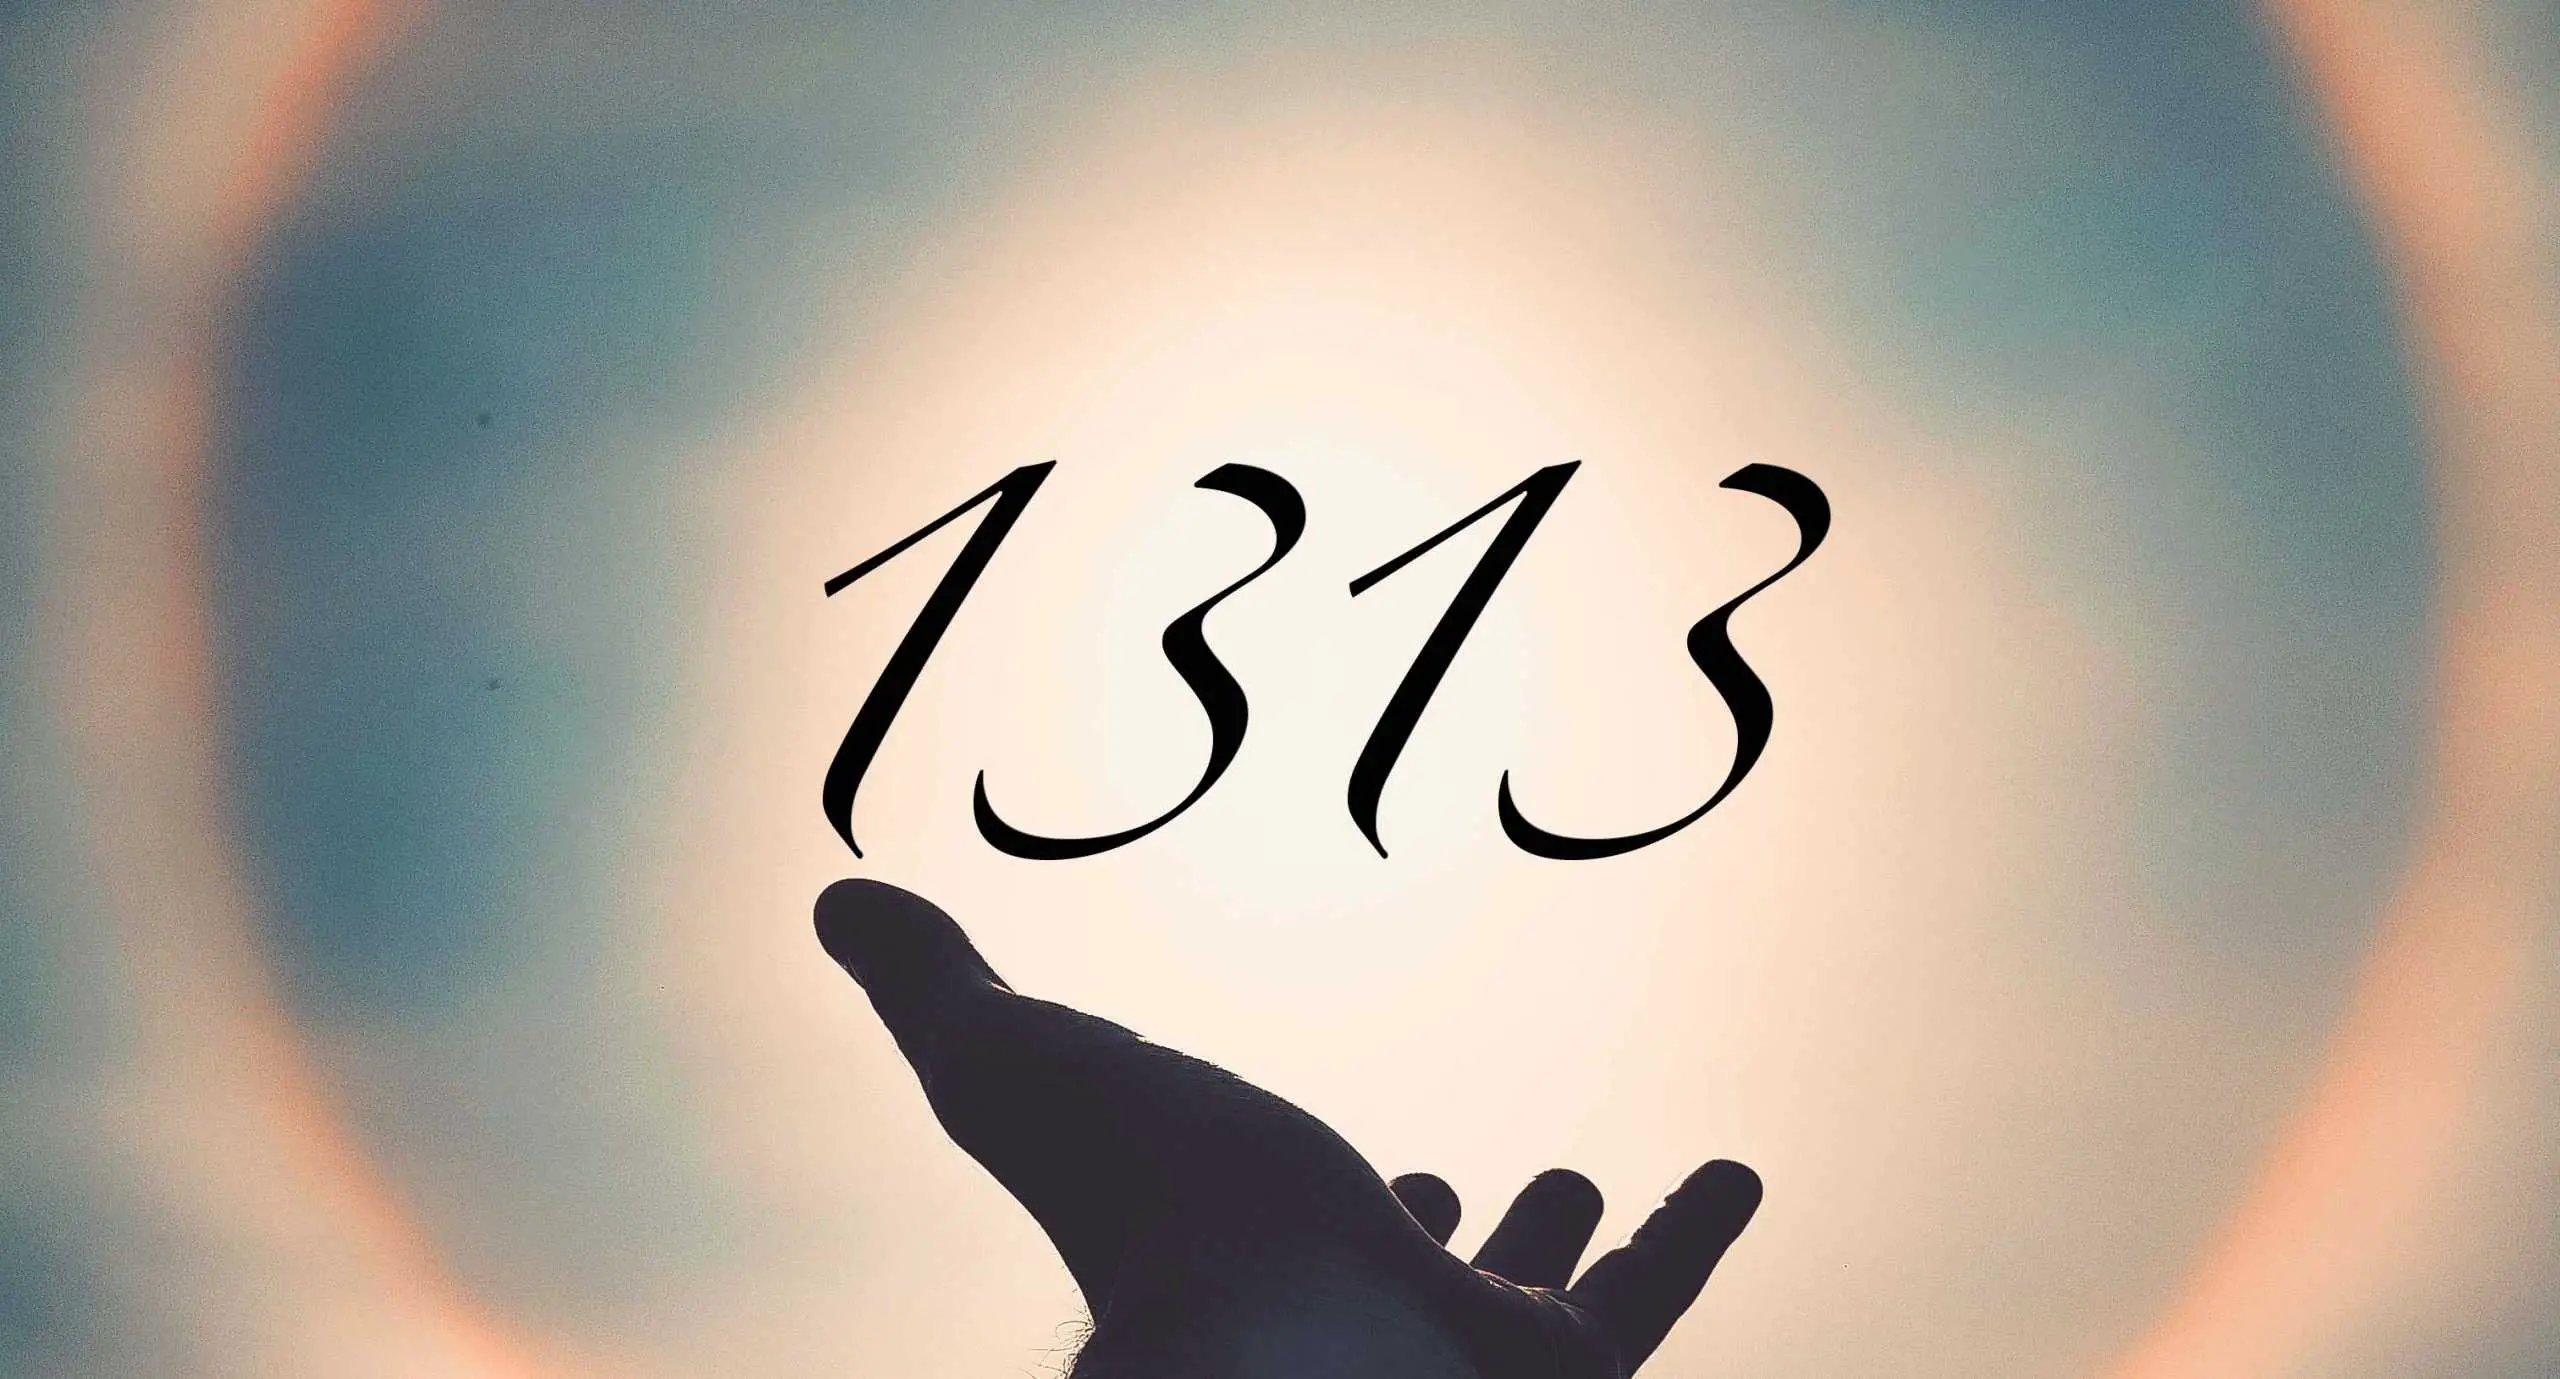 Signification du nombre 1313